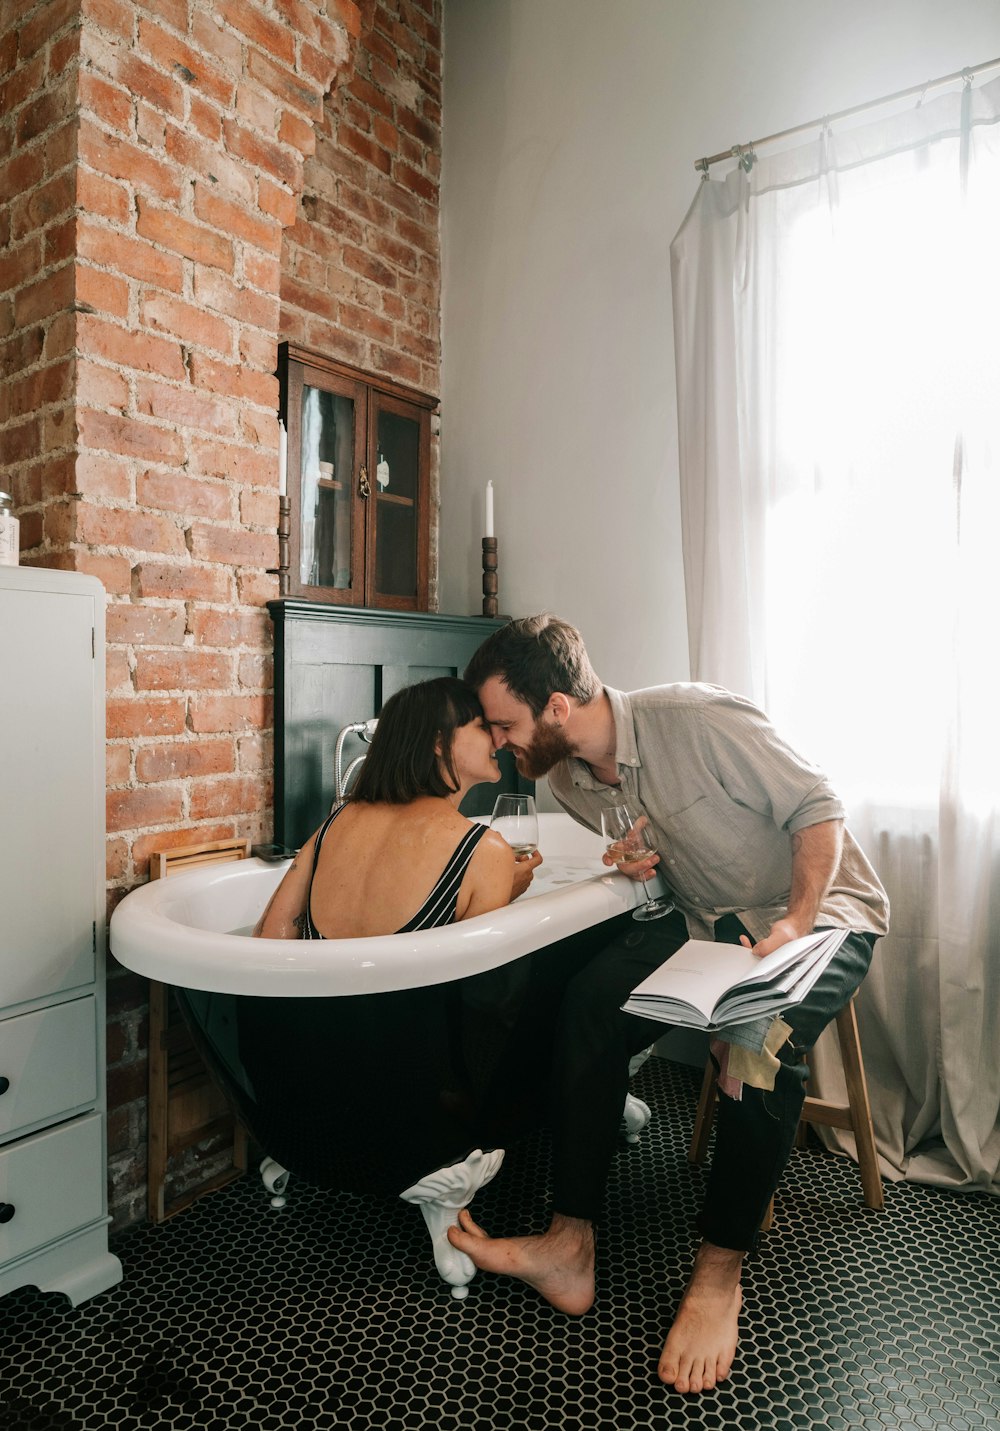 uomo in camicia grigia che bacia la donna in bikini nero sulla vasca da bagno